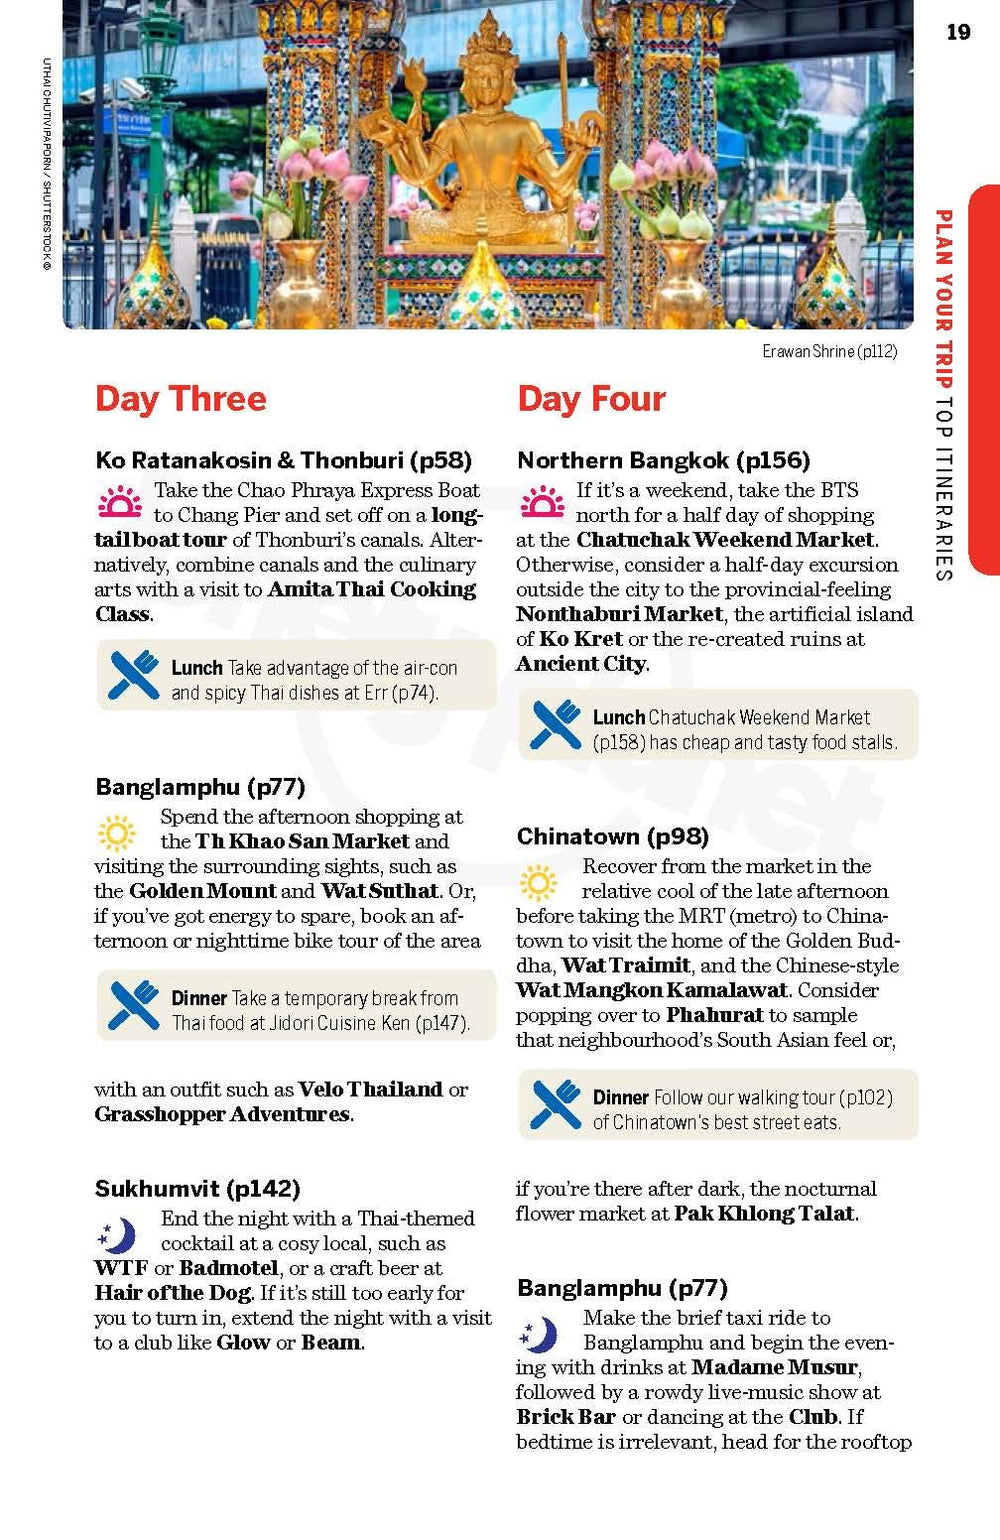 Guide de voyage (en anglais) - Bangkok | Lonely Planet guide de voyage Lonely Planet 